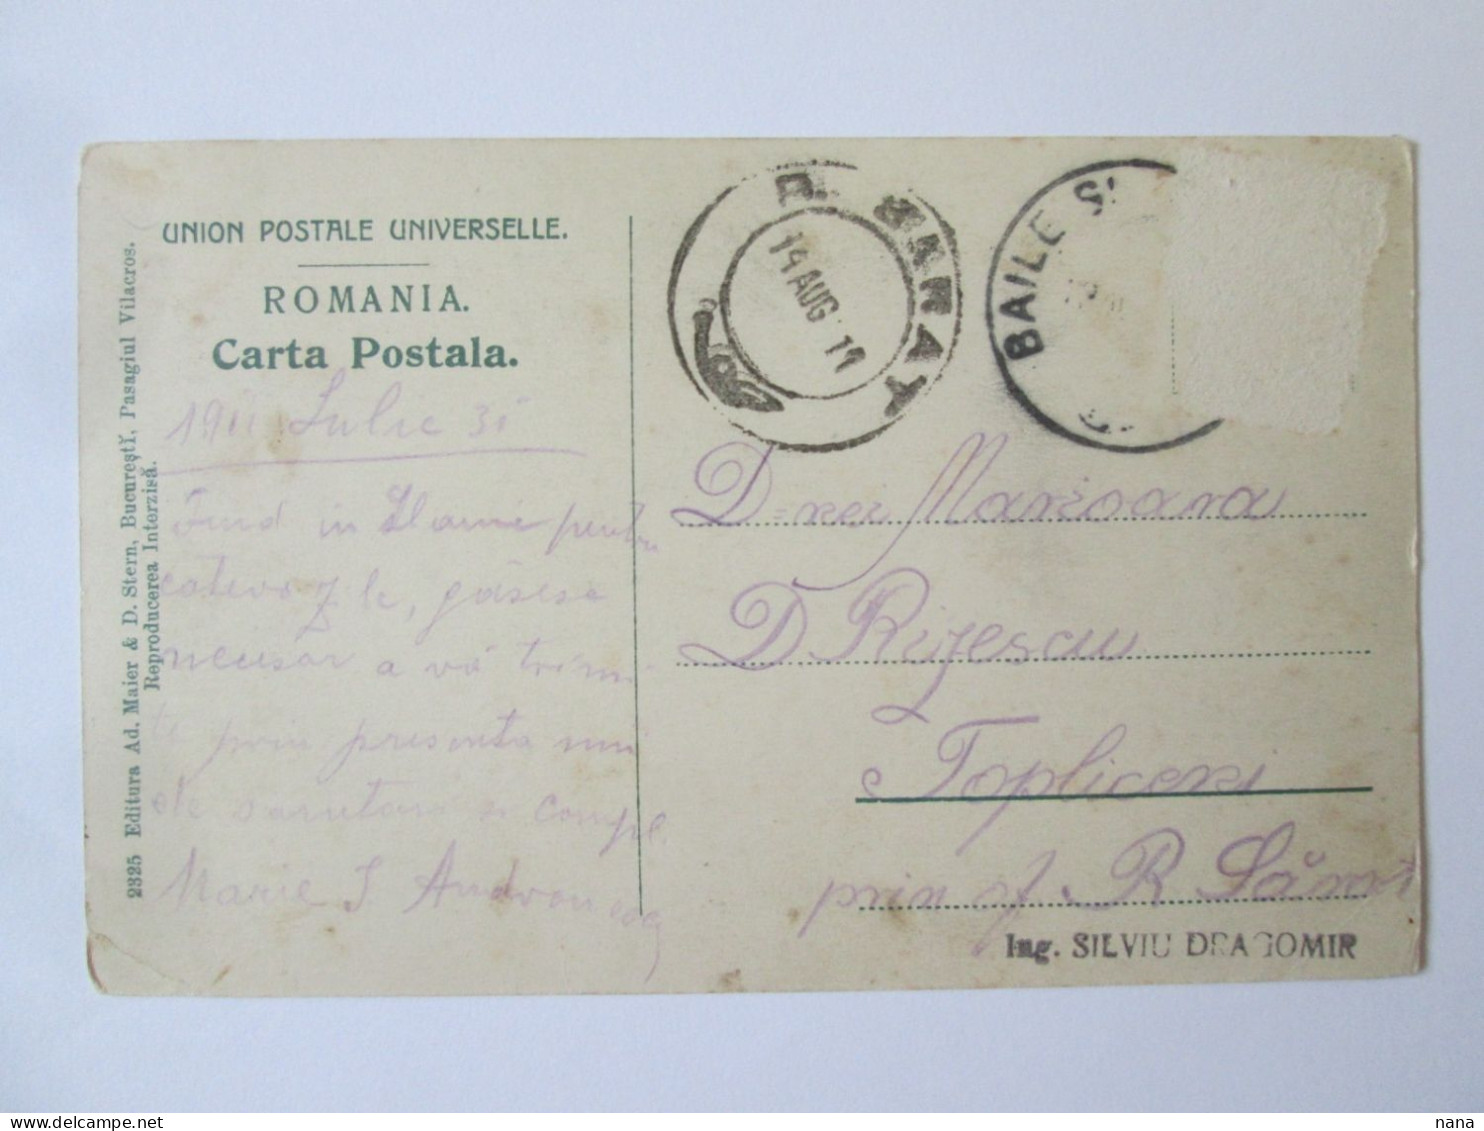 Romania-Slănic Moldova:Casino & Hotel Racovița 1911 Mailed Postcard - Rumänien